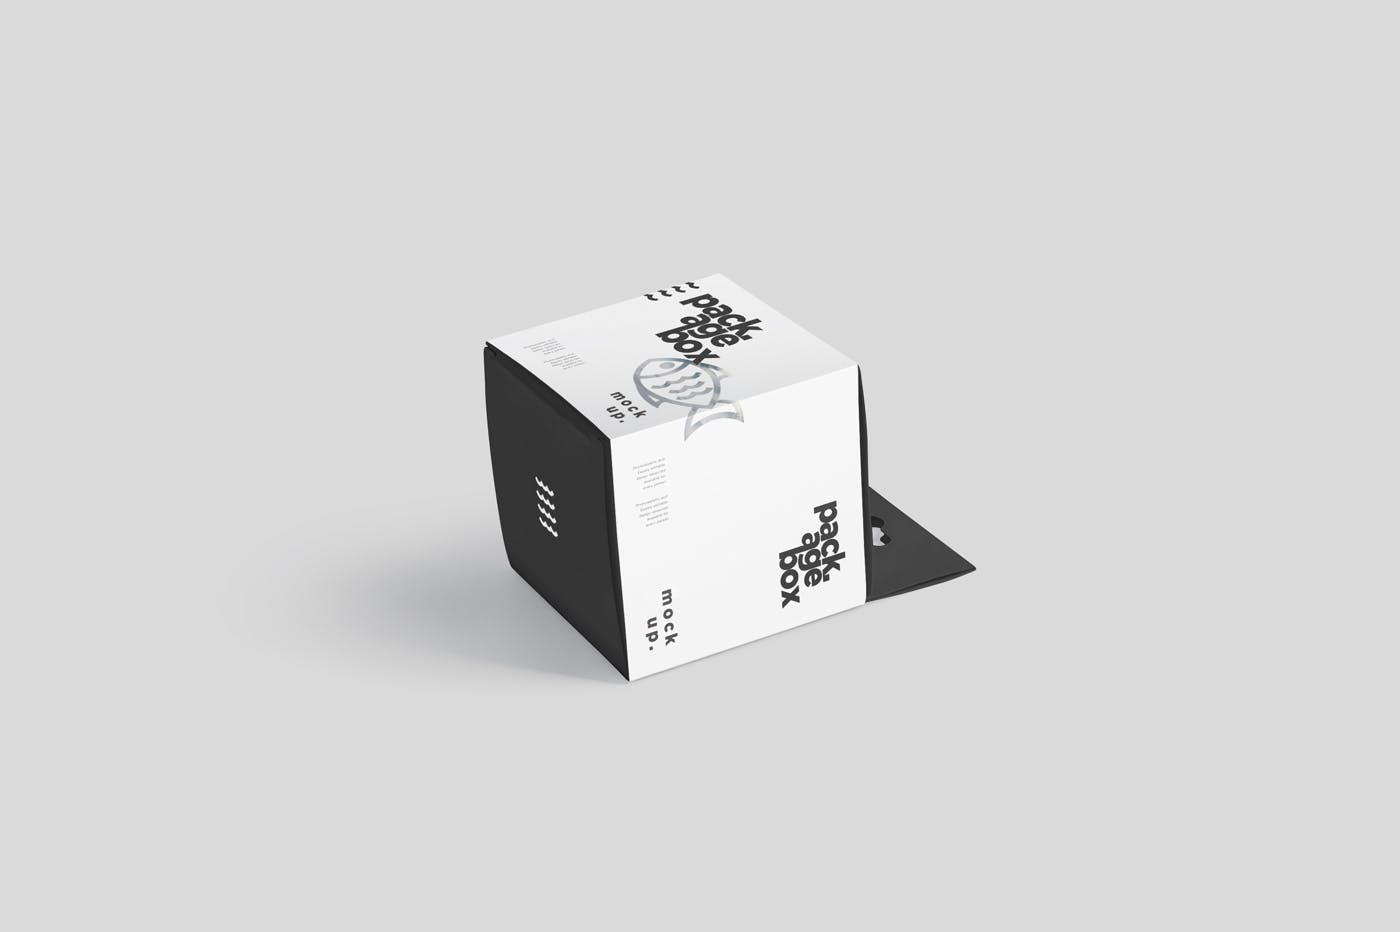 挂耳式方形产品包装盒样机模板 Package Box Mockup Set – Square With Hanger插图(4)